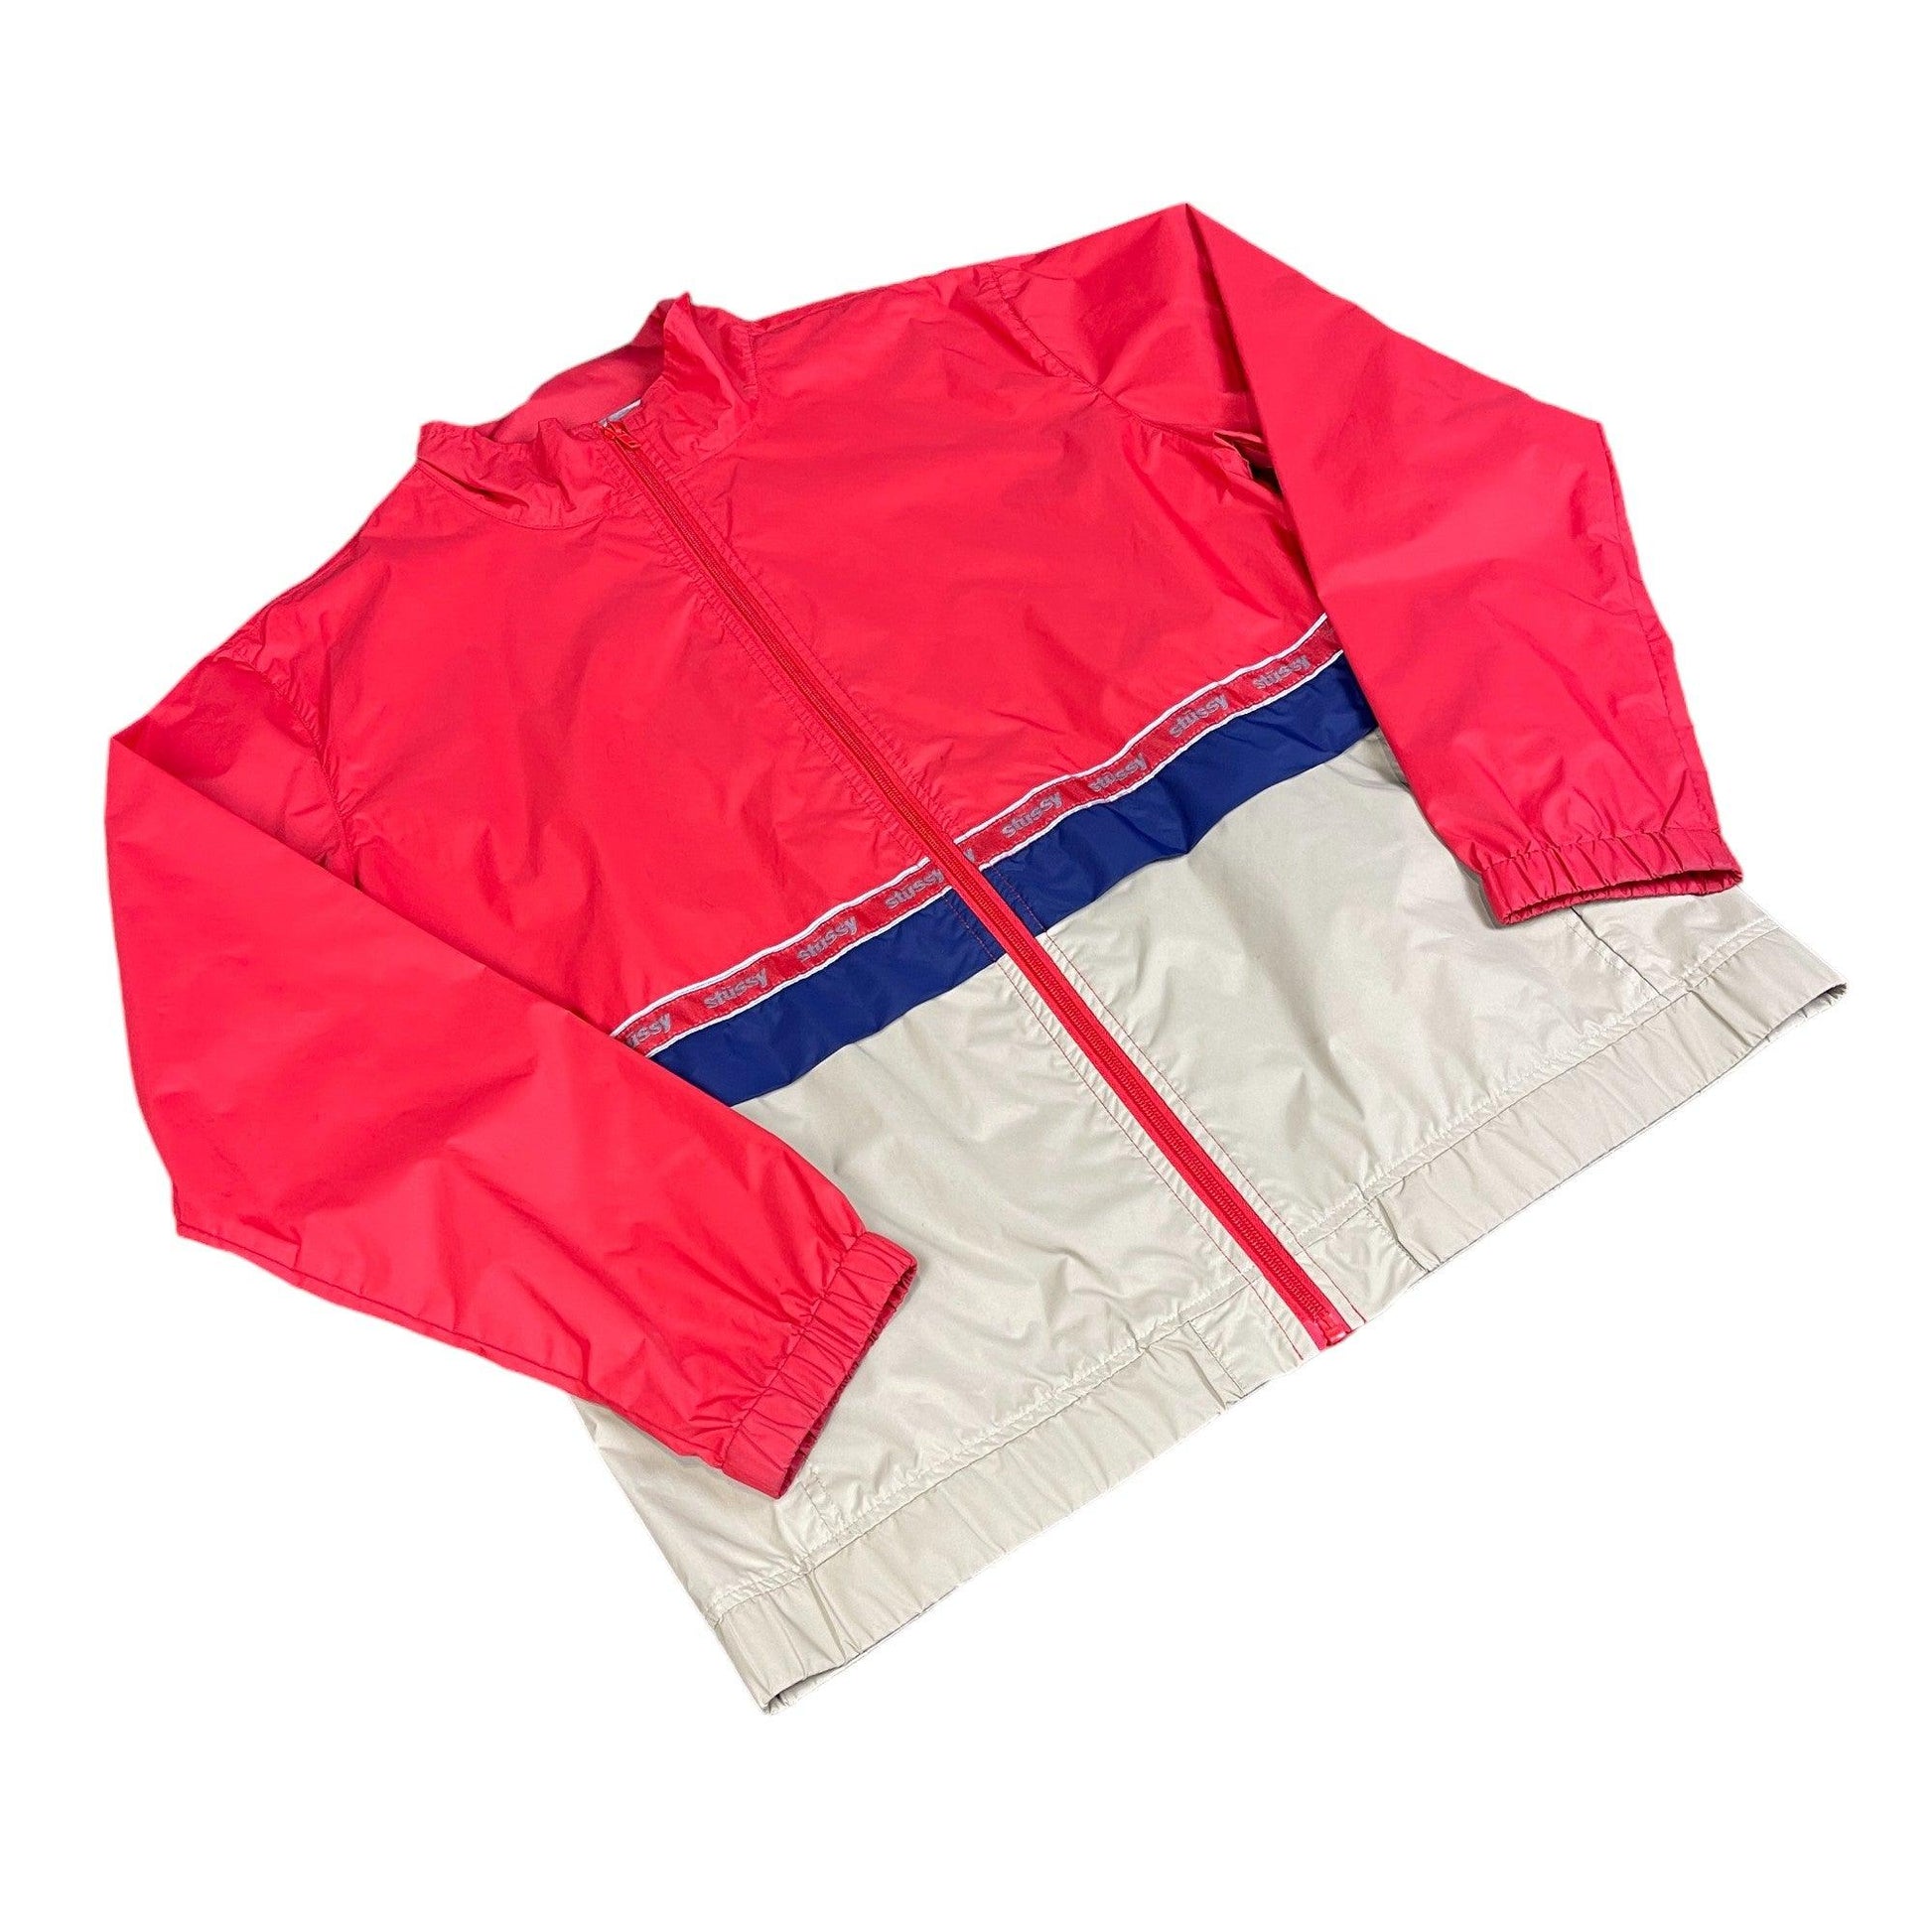 Red + Beige Stussy Jacket - Medium - The Streetwear Studio